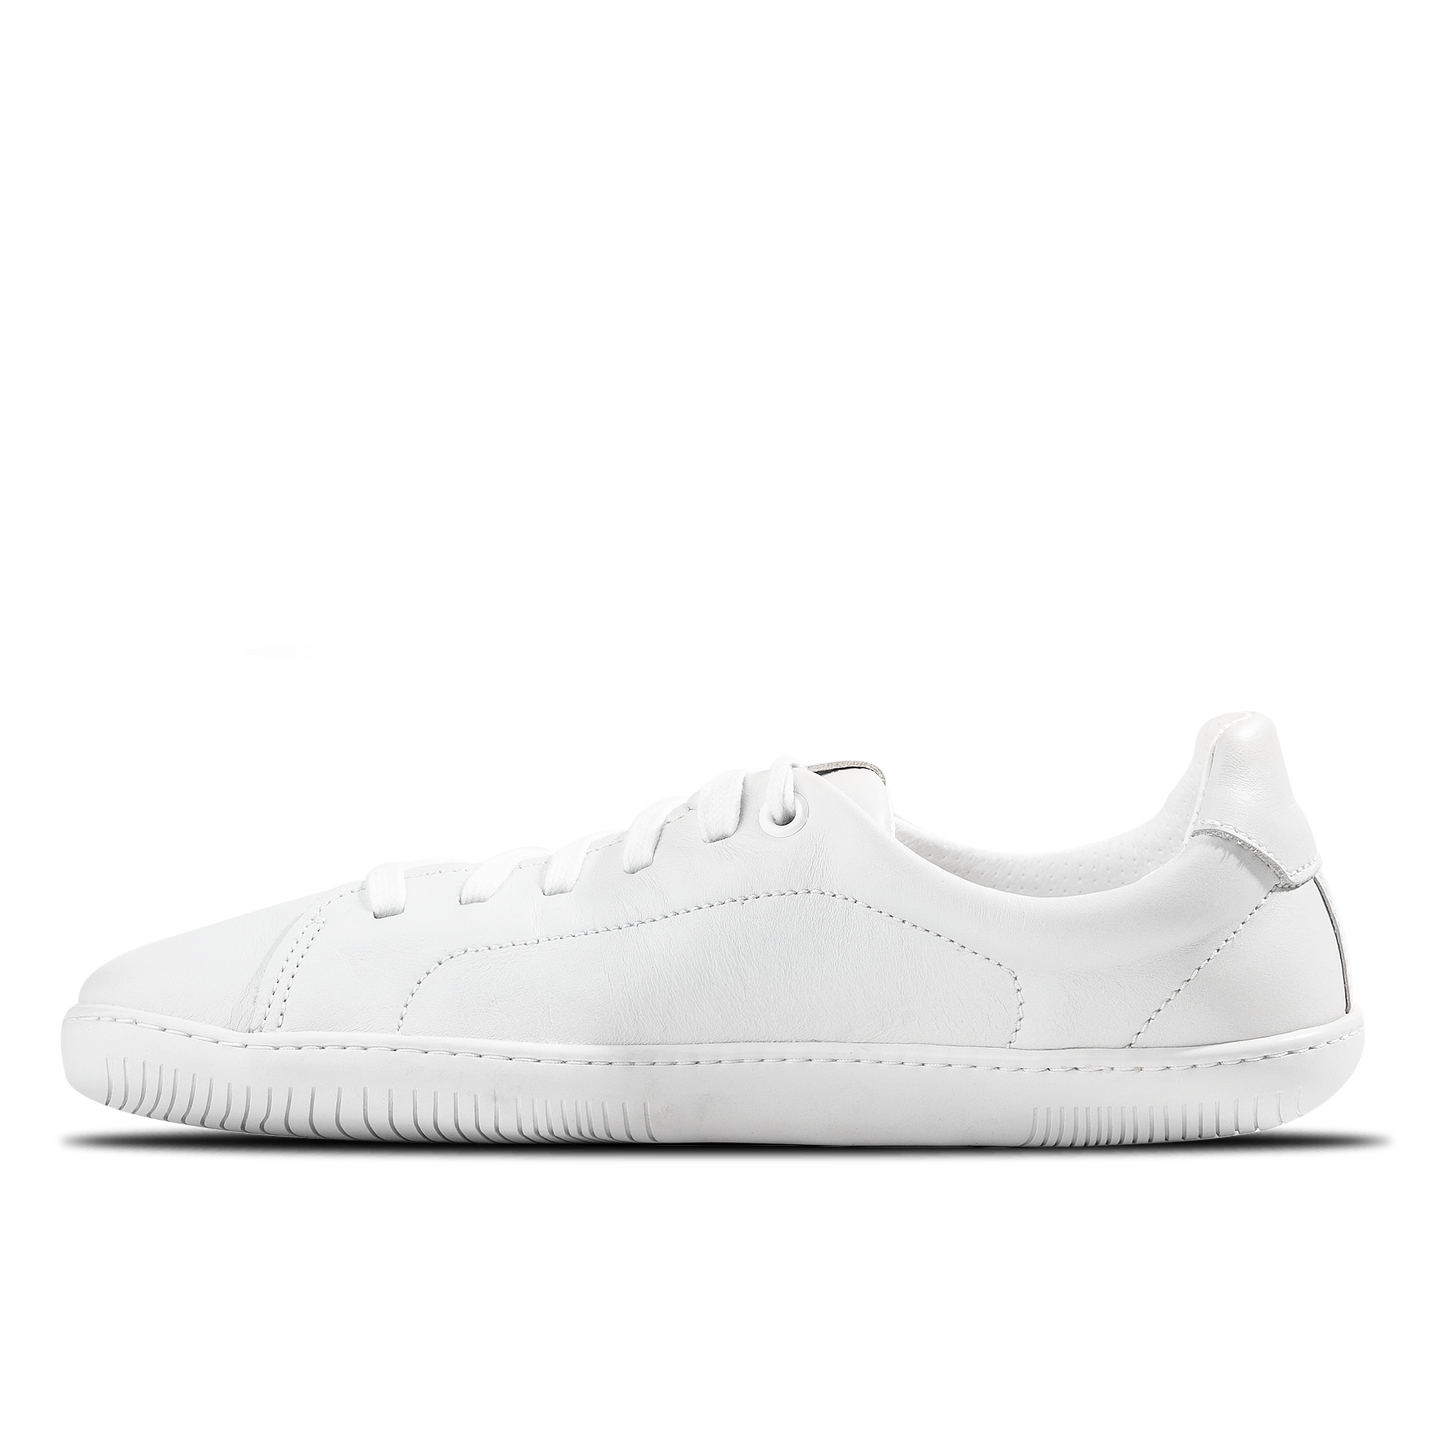 Aylla Keck Womens barfods sneakers i læder til kvinder i farven white / white, inderside